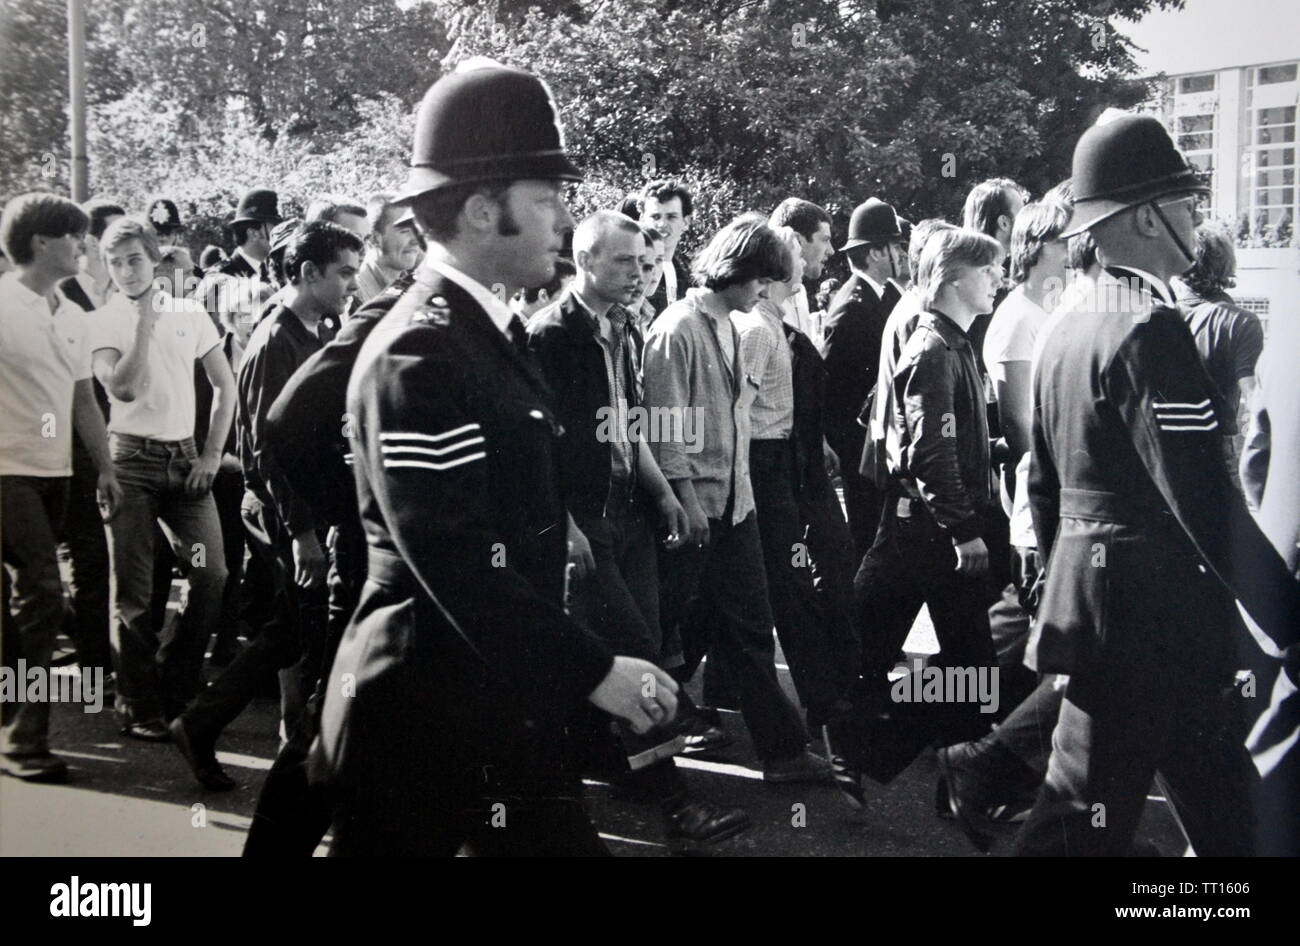 Les jeunes hommes participent à une Marche nationale du Front, Londres, Angleterre, entourée de policiers, au milieu des années 1970 Banque D'Images